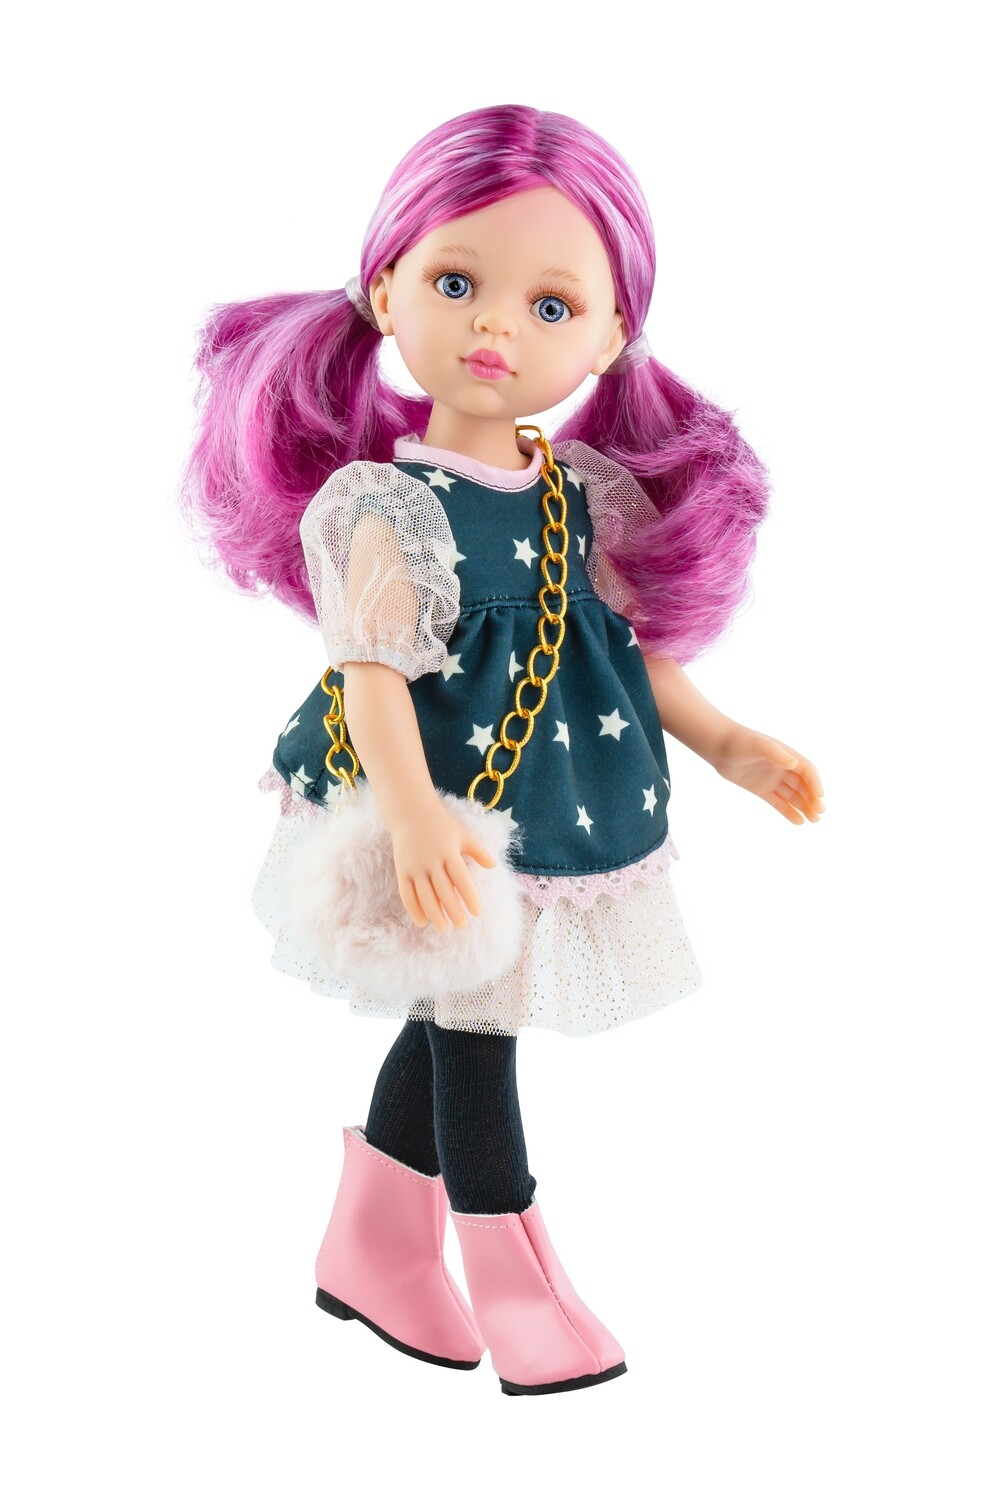 Кукла Росела, Paola Reina Паола Рейна (в фабричном наряде), 34 см